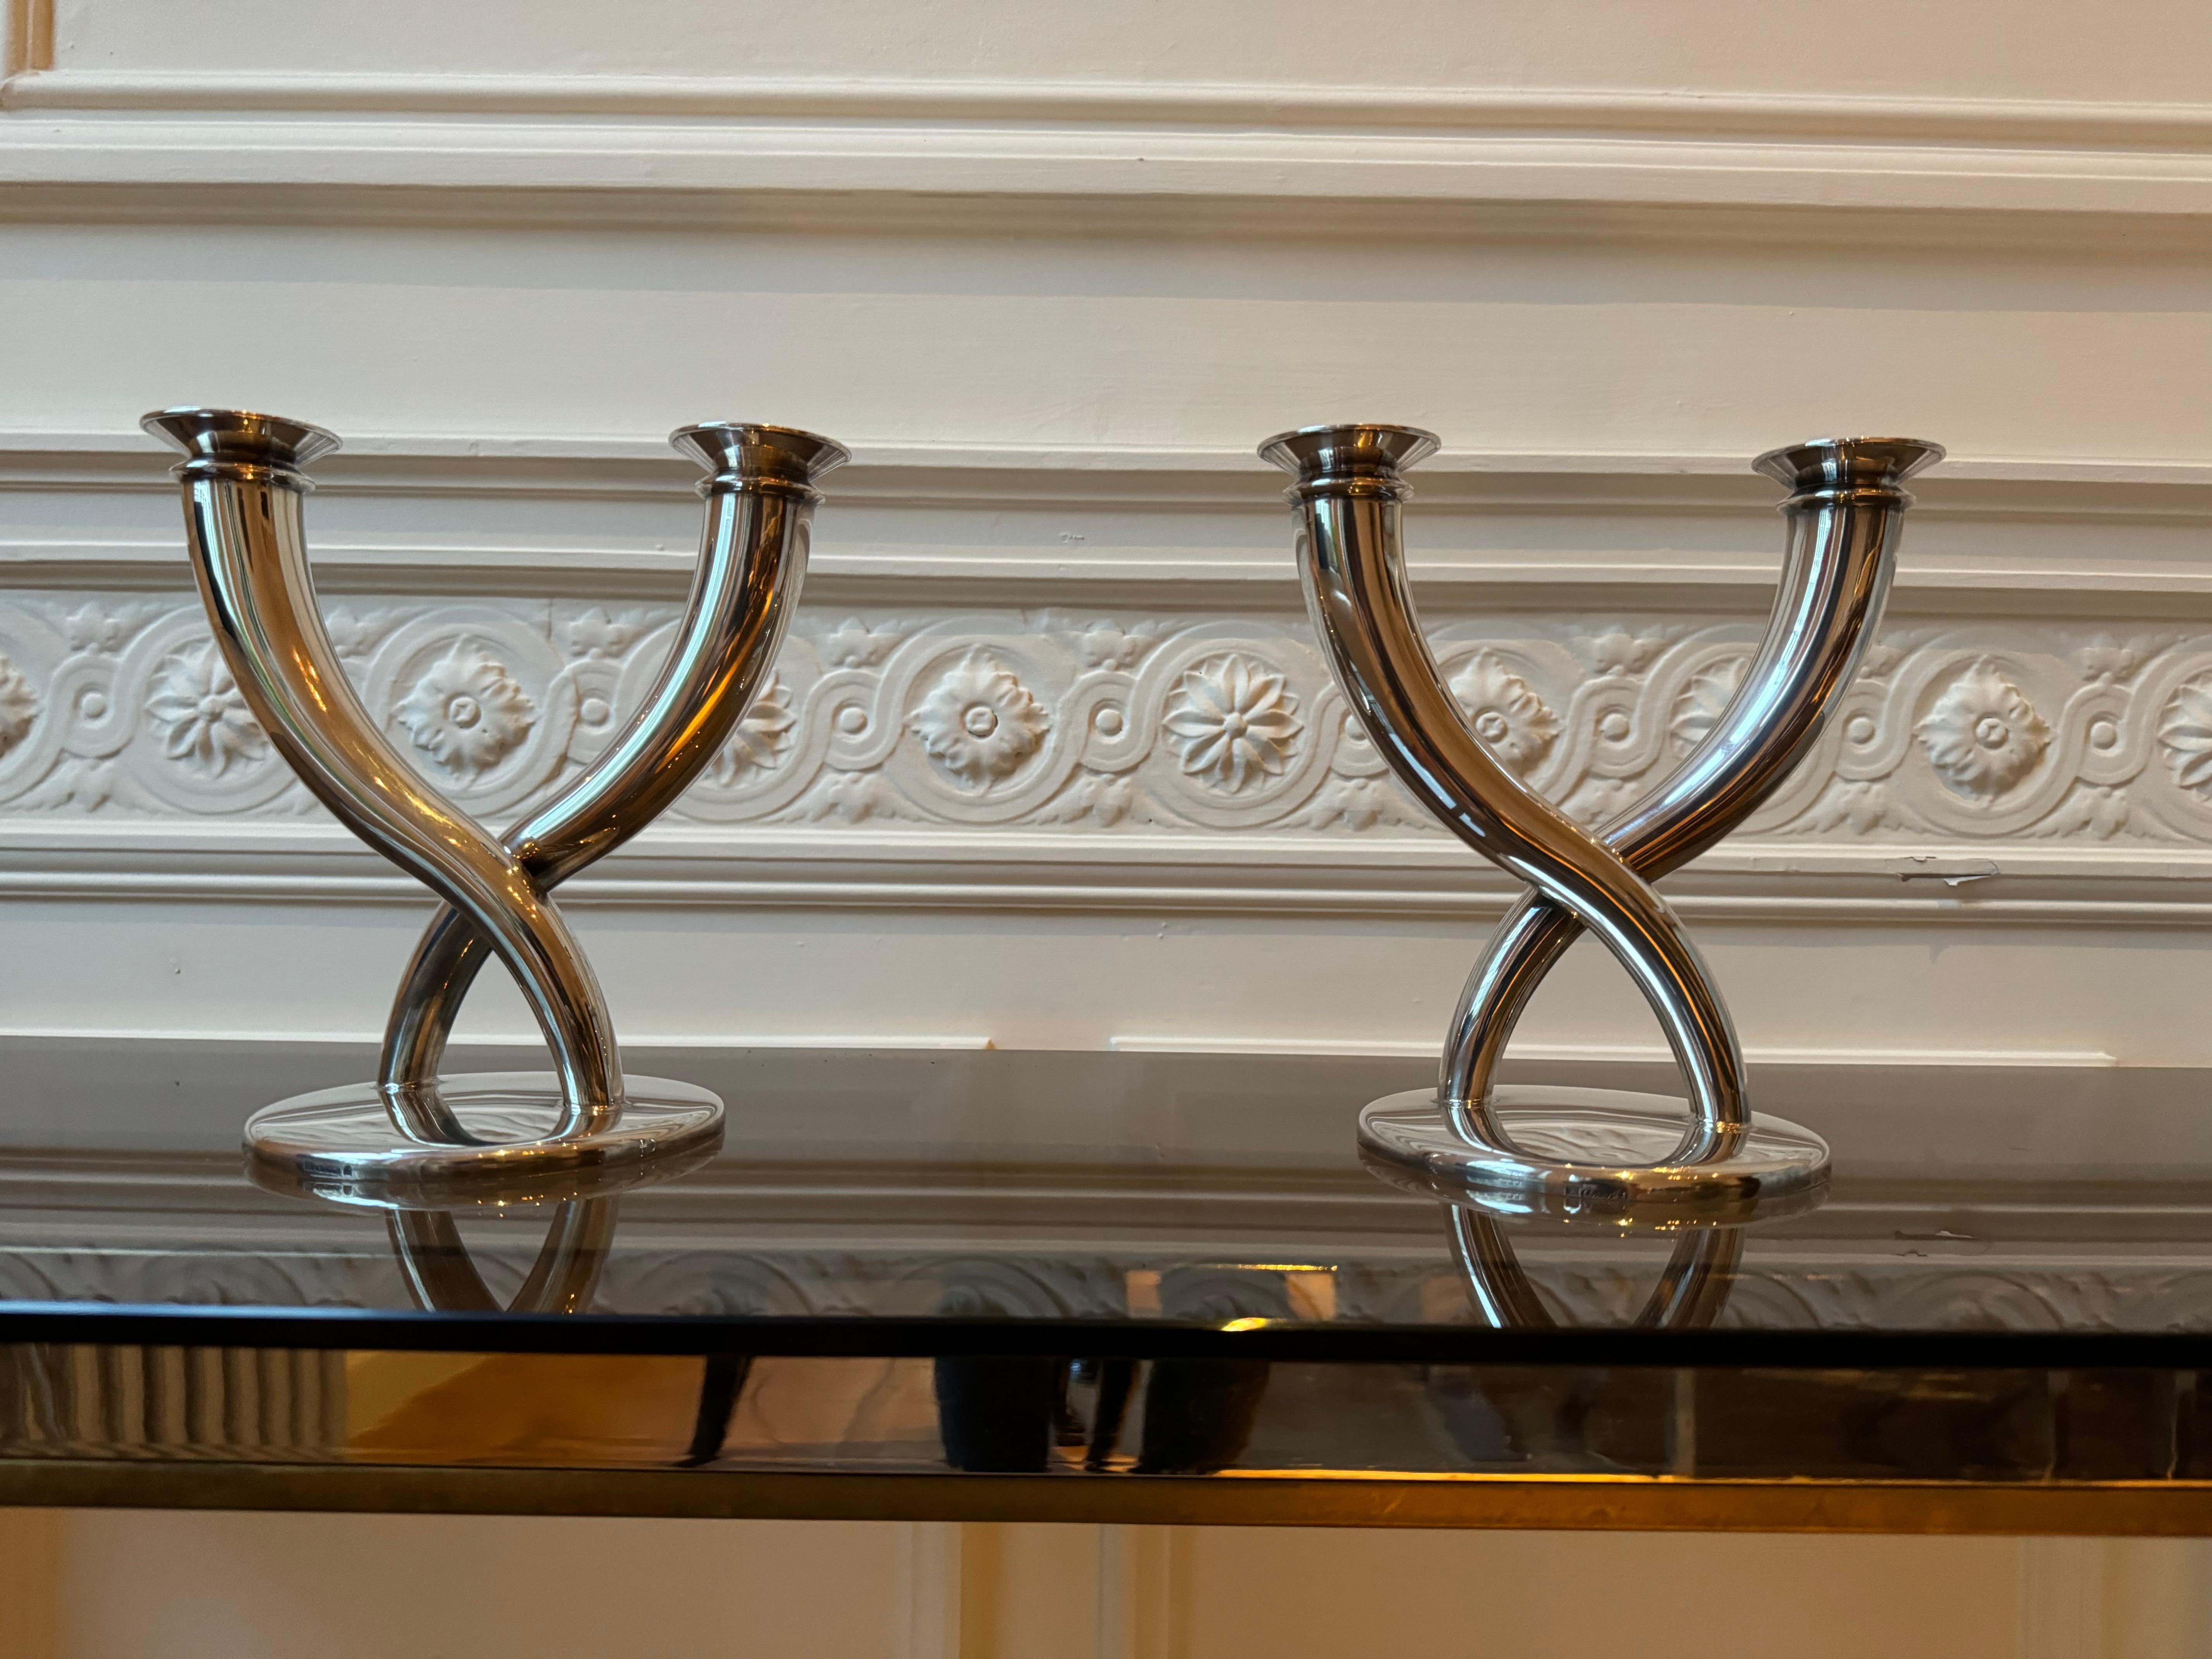 Ein Paar silberne Kerzenständer, entworfen von dem berühmten Mailänder Architekten und Designer Gio Ponti. Die Kerzenhalter bestehen aus zwei Zweigen, die auf einem runden Sockel angebracht sind und nach oben hin leicht breiter werden, da sie sich